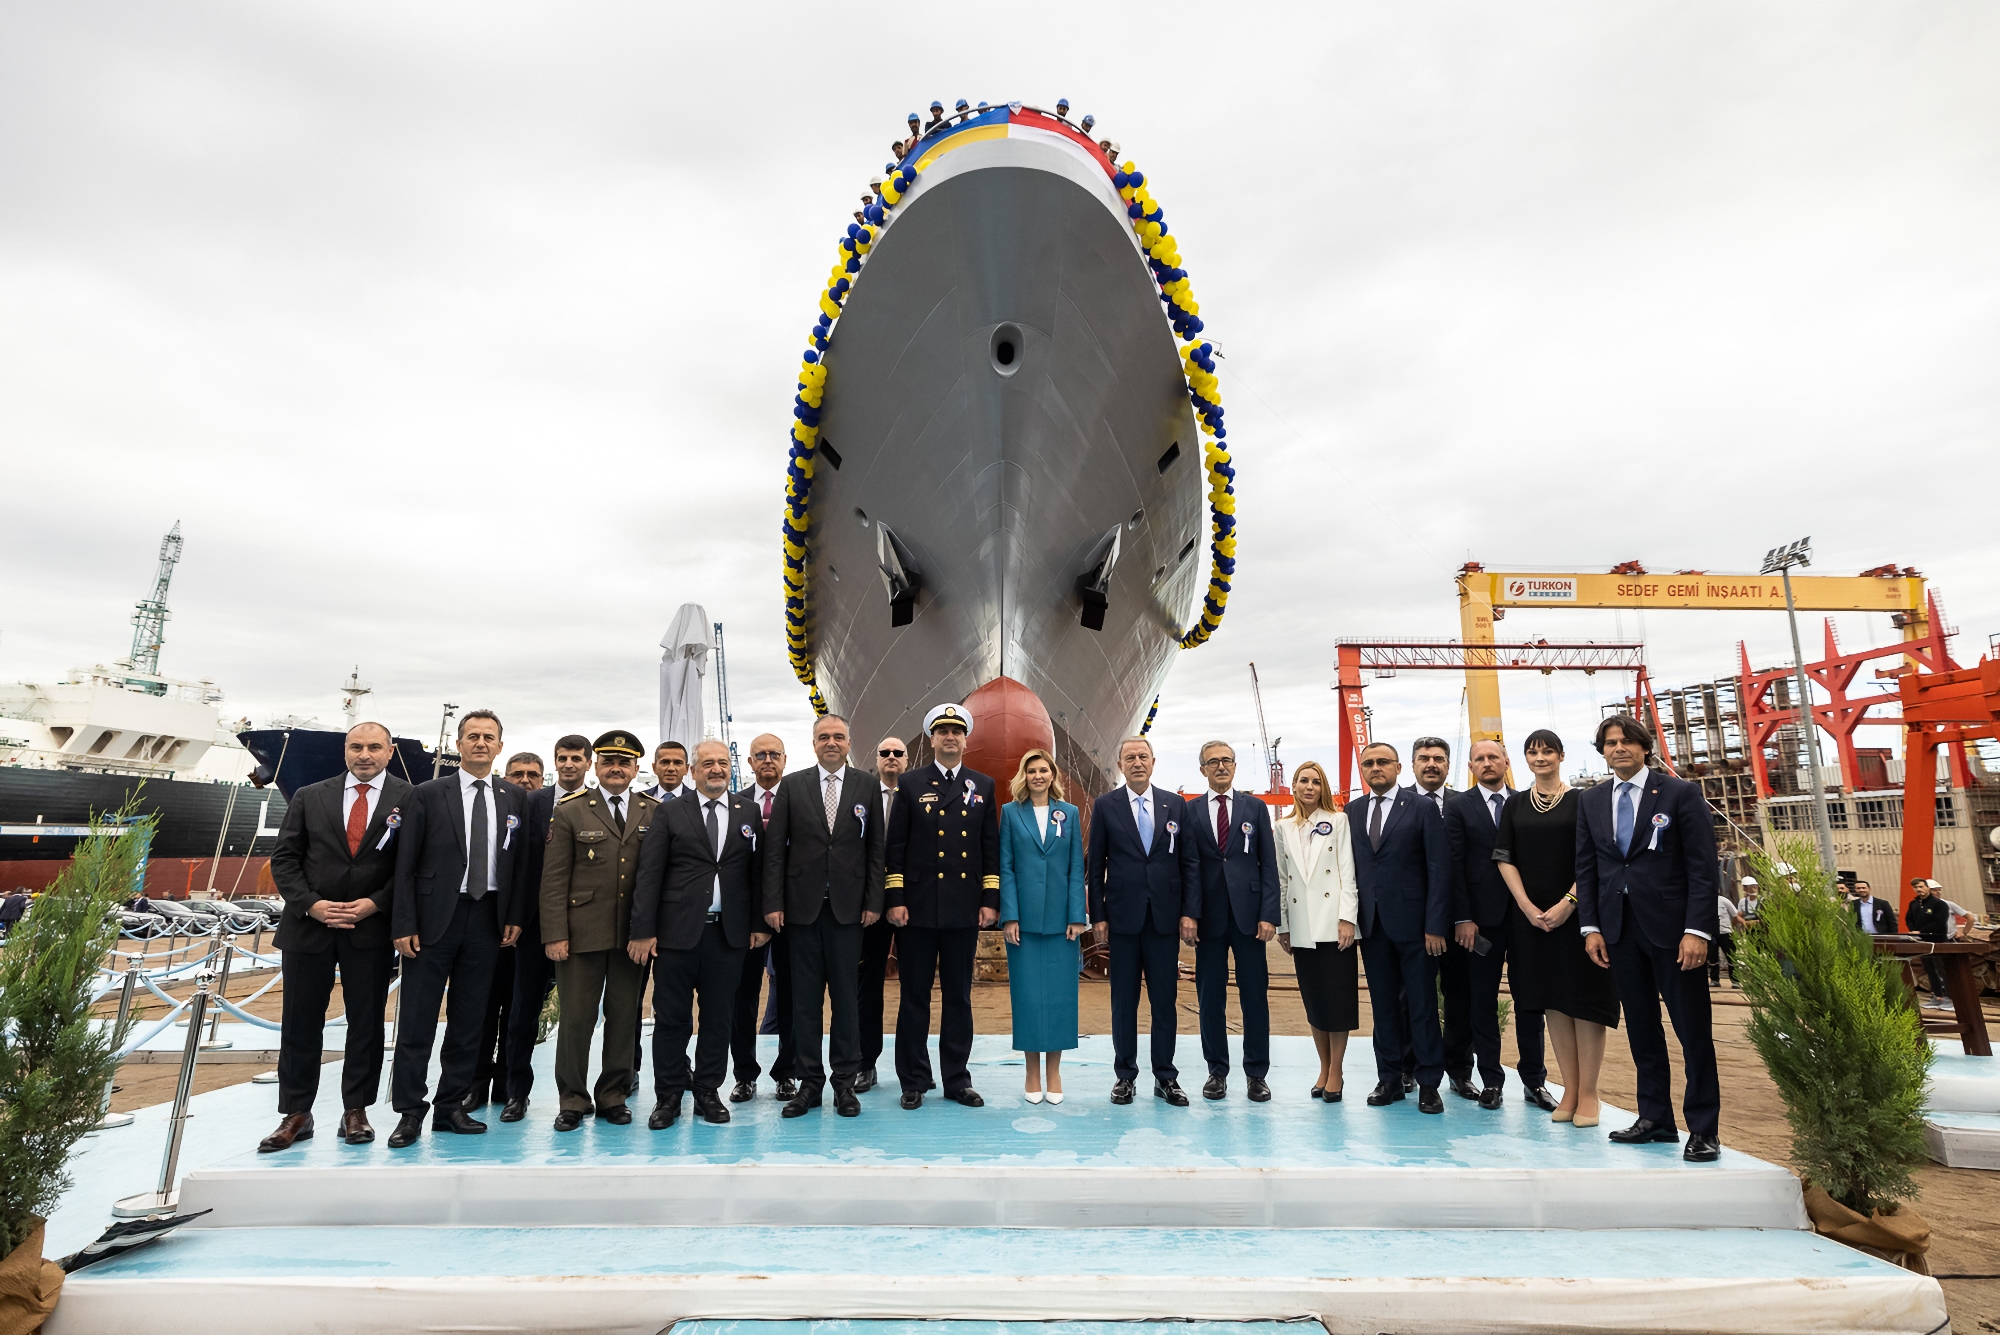 Elena Zelenska ließ in der Türkei das Flaggschiff der ukrainischen Marine, die Korvette "Hetman Ivan Mazepa" der Ada-Klasse, zu Wasser